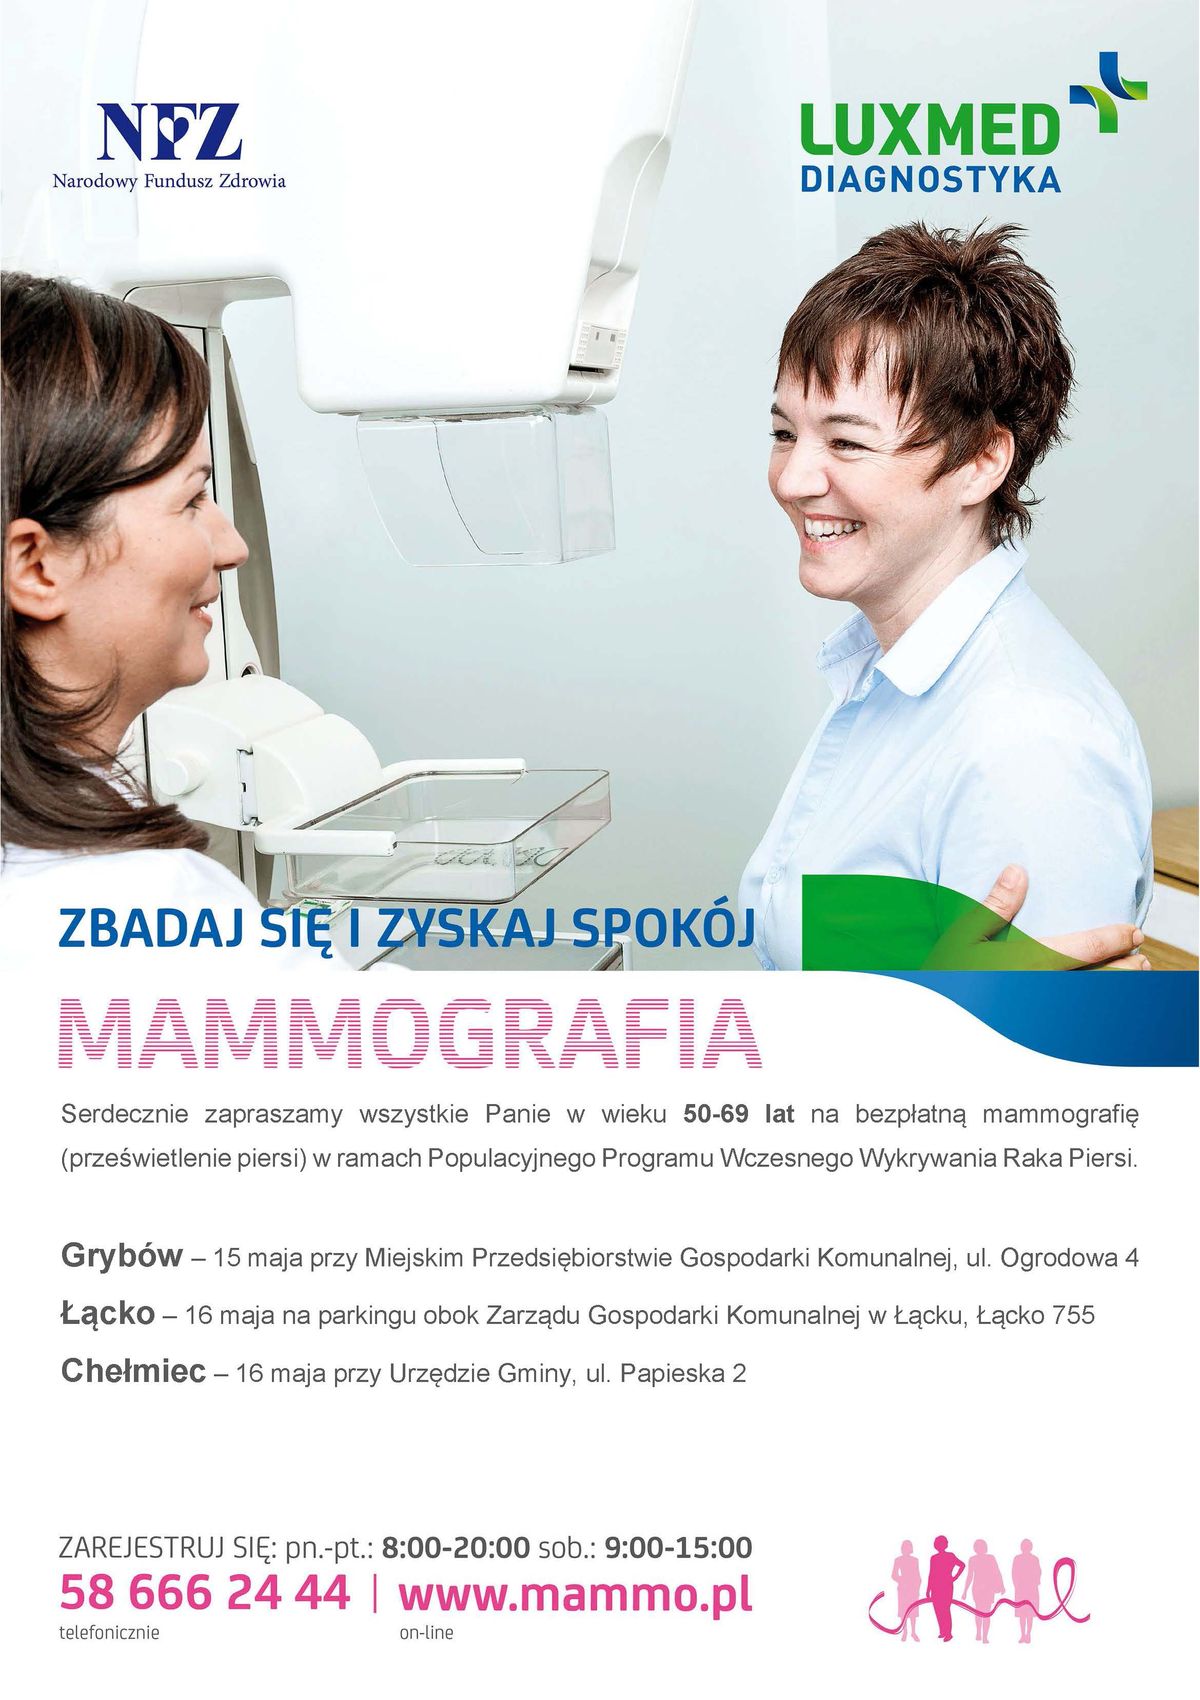 LUXMED - badanie mammograficzne